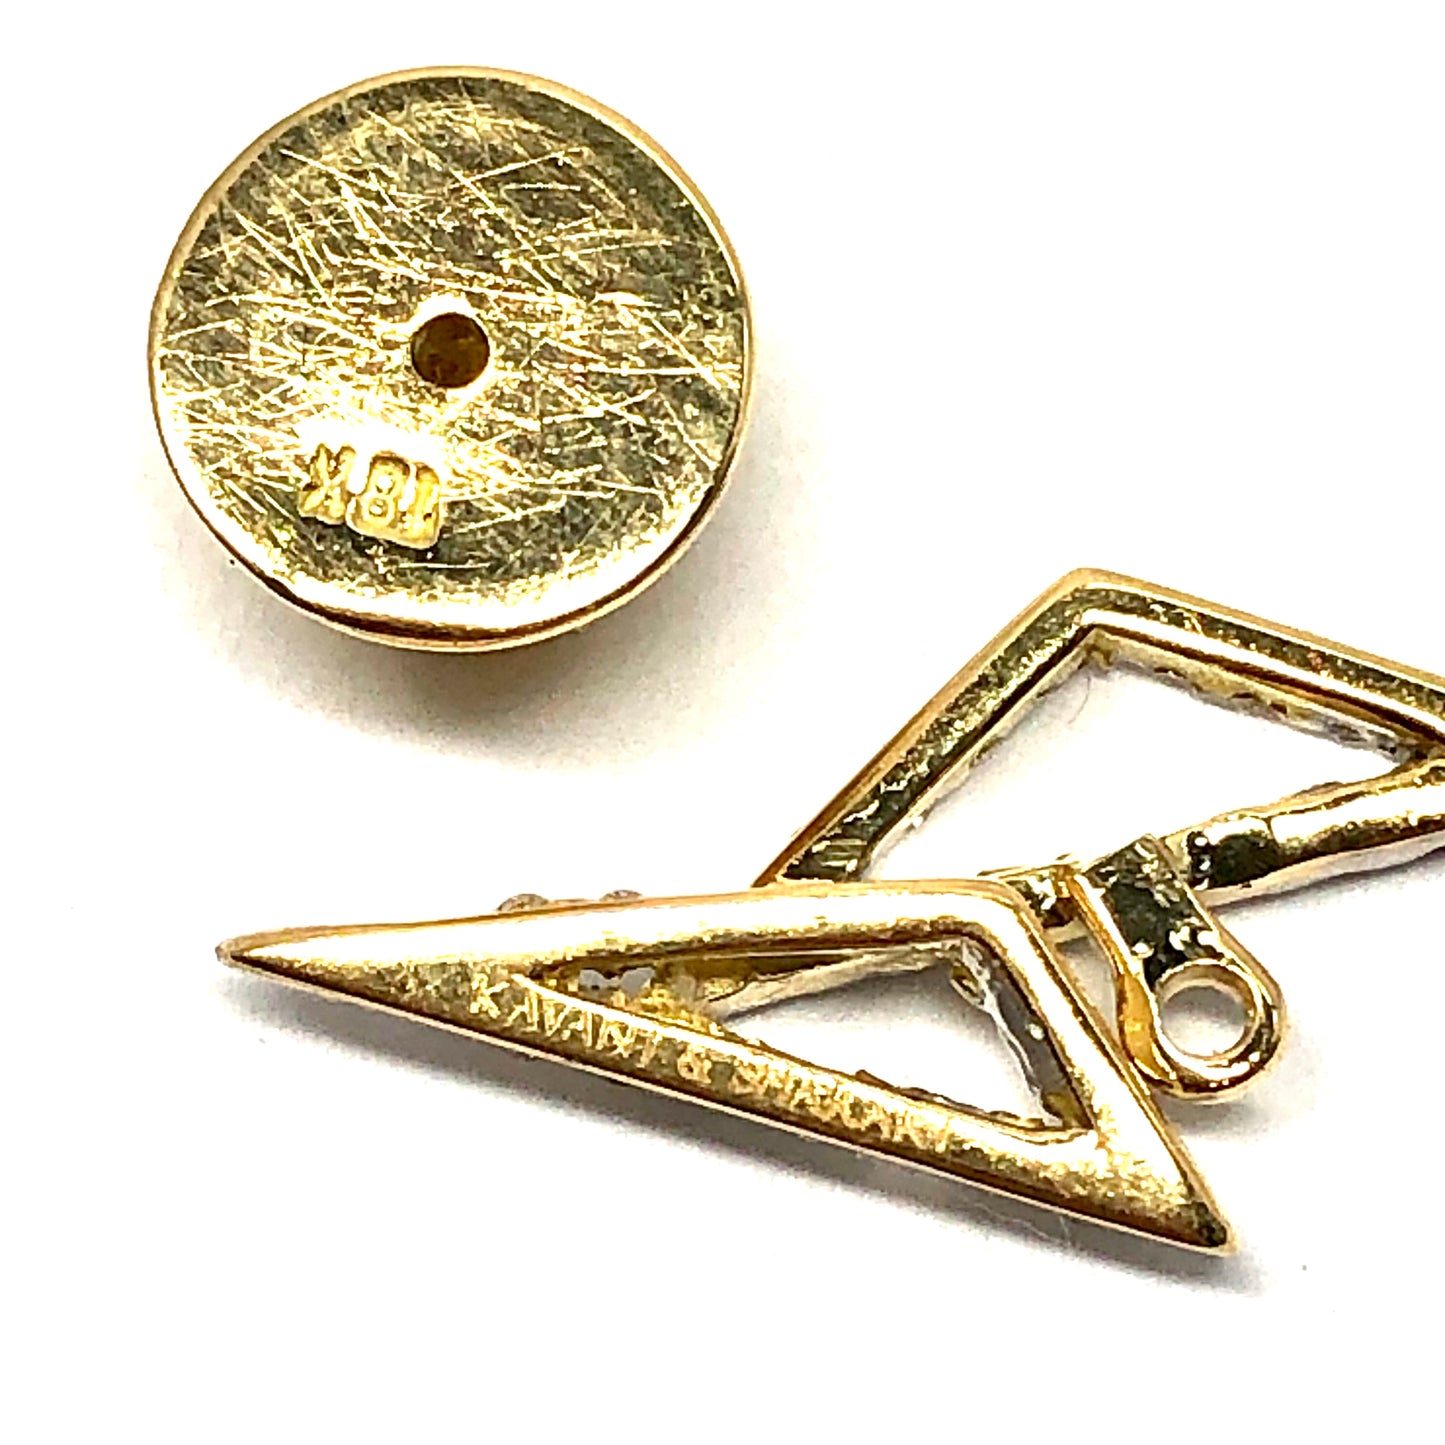 KAVANT & SHARART 18K Yellow Gold Designer Earrings w/ Genuine Emeralds and Diamonds 4.92g